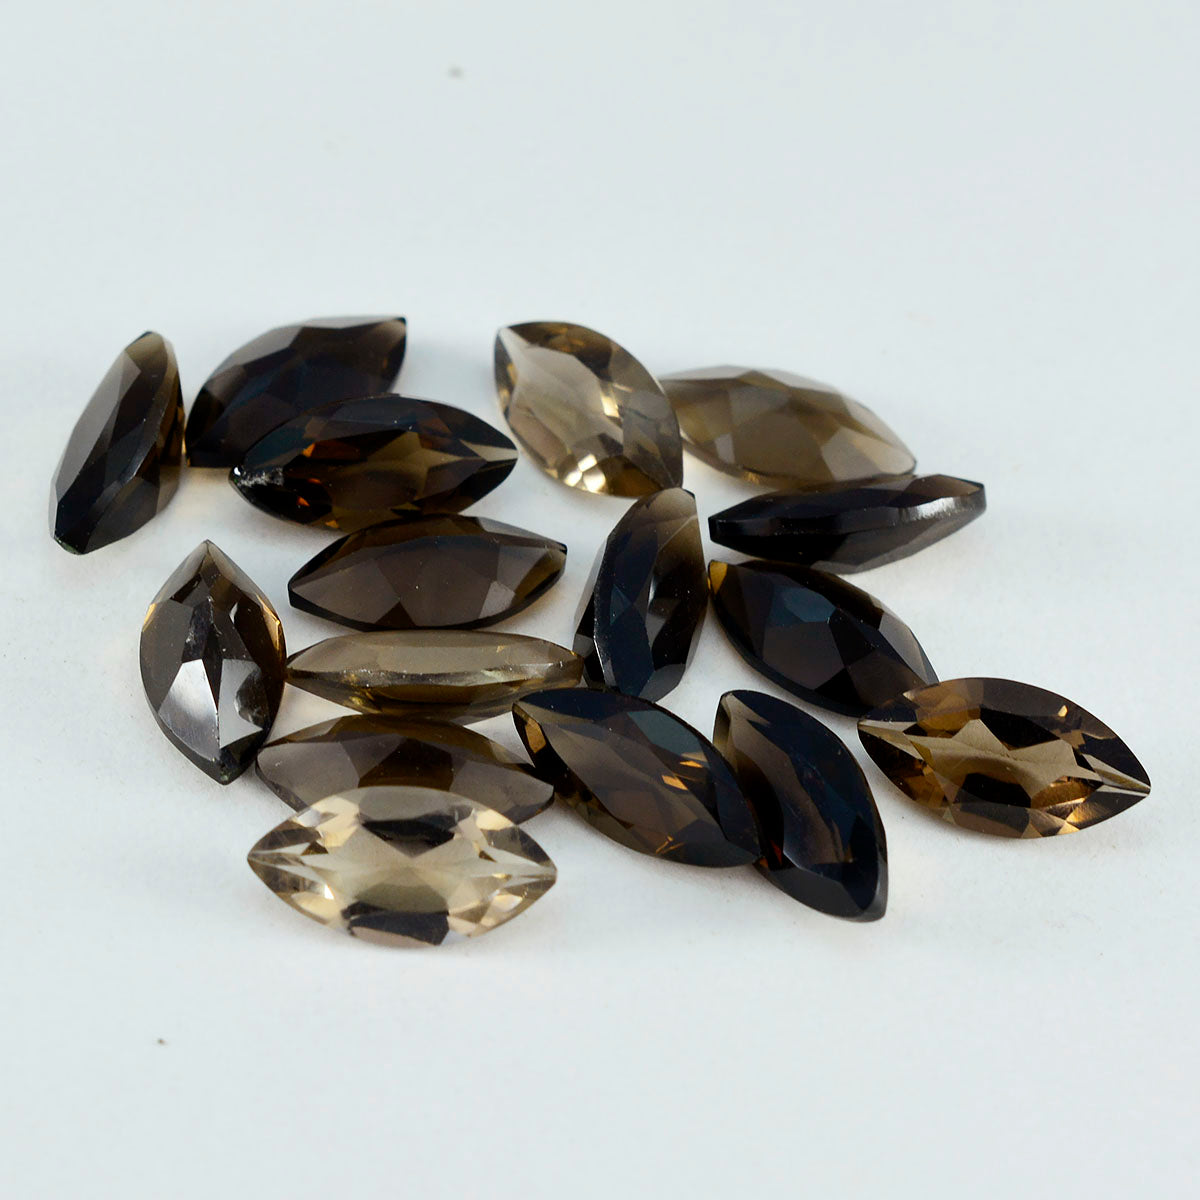 riyogems 1 шт. натуральный коричневый дымчатый кварц ограненный 5x10 мм форма маркизы хорошее качество камень